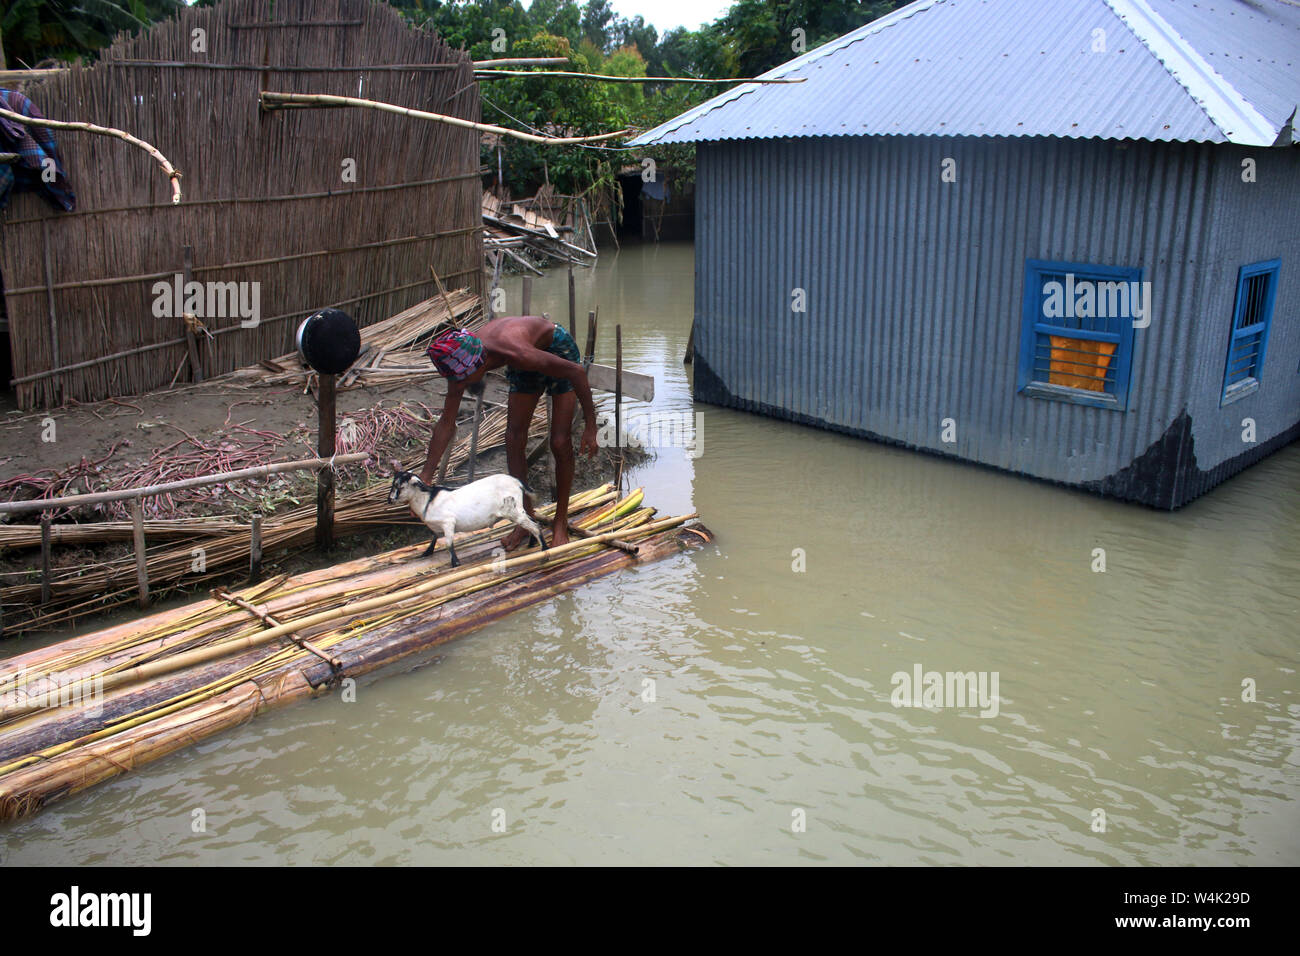 Tangail, Bangladesch. 23. Juli, 2019. Ein Mann nimmt seine Ziege zu schützen, nachdem sein Haus von Überschwemmungen in Tangail betroffen. Über millionen Menschen durch Überschwemmungen durch den Monsun Regen und ausufernden Fluss im Norden, Nordosten und hügeligen Regionen in Bangladesch ausgelöst betroffen. Credit: SOPA Images Limited/Alamy leben Nachrichten Stockfoto